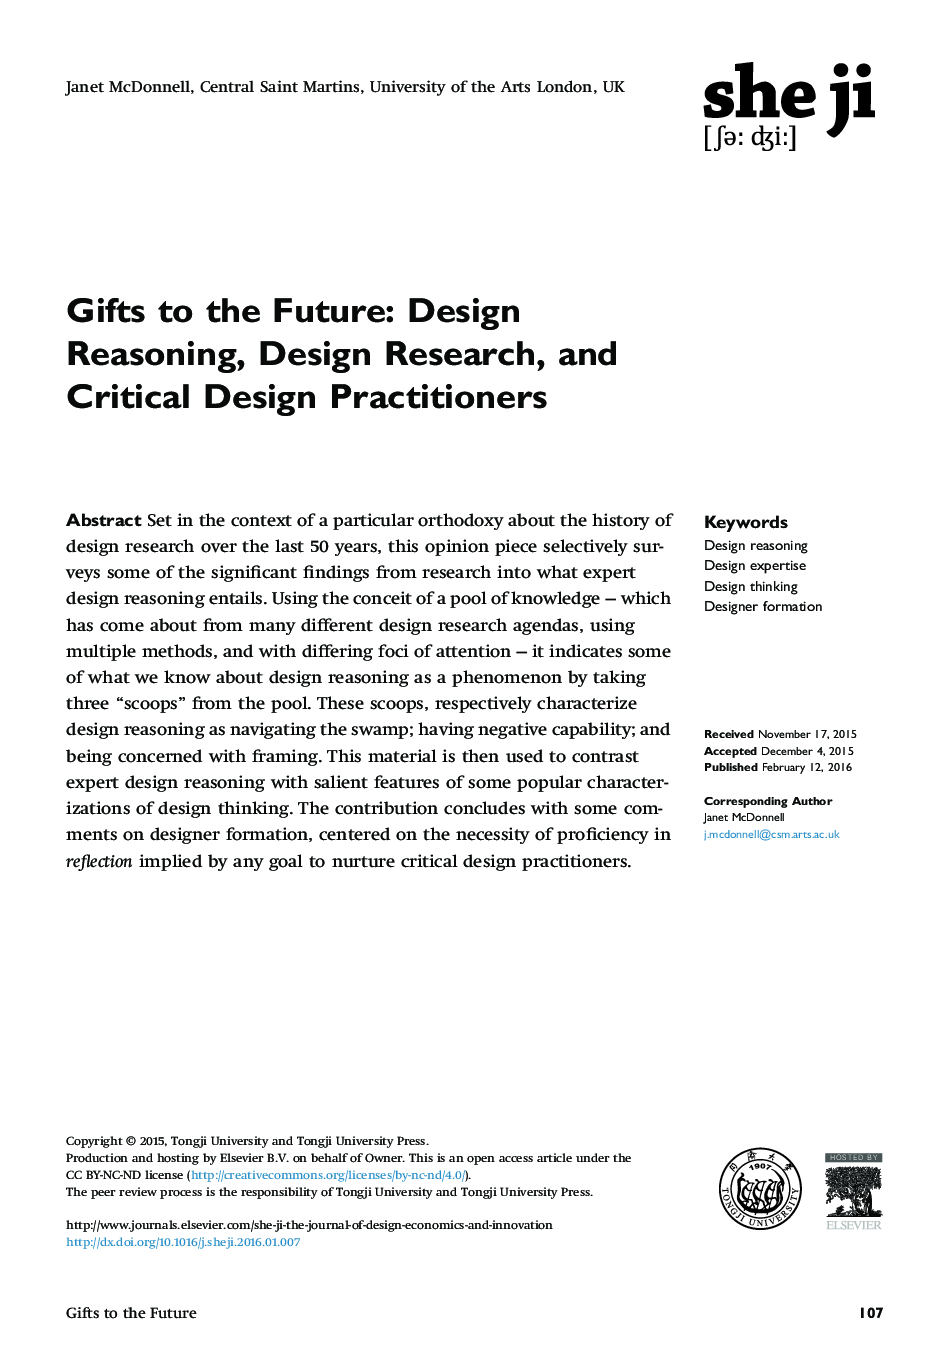 هدایای آینده: اصول طراحی، تحقیقات طراحی و تمرینکنندگان طراحی بحرانی 